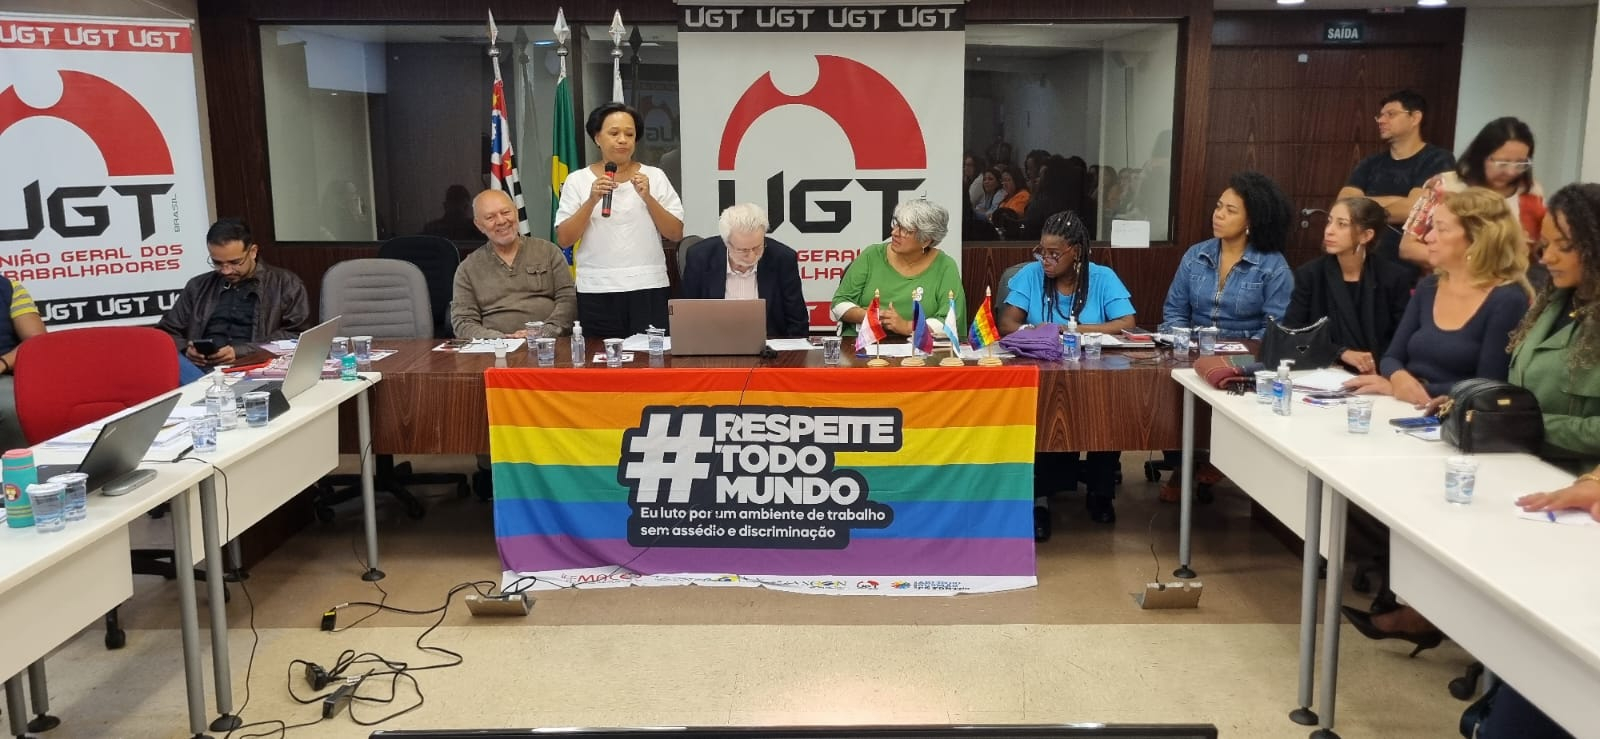 A UGT Cria Coletivo LGBTQIAP+ Durante Encontro da Diversidade Humana